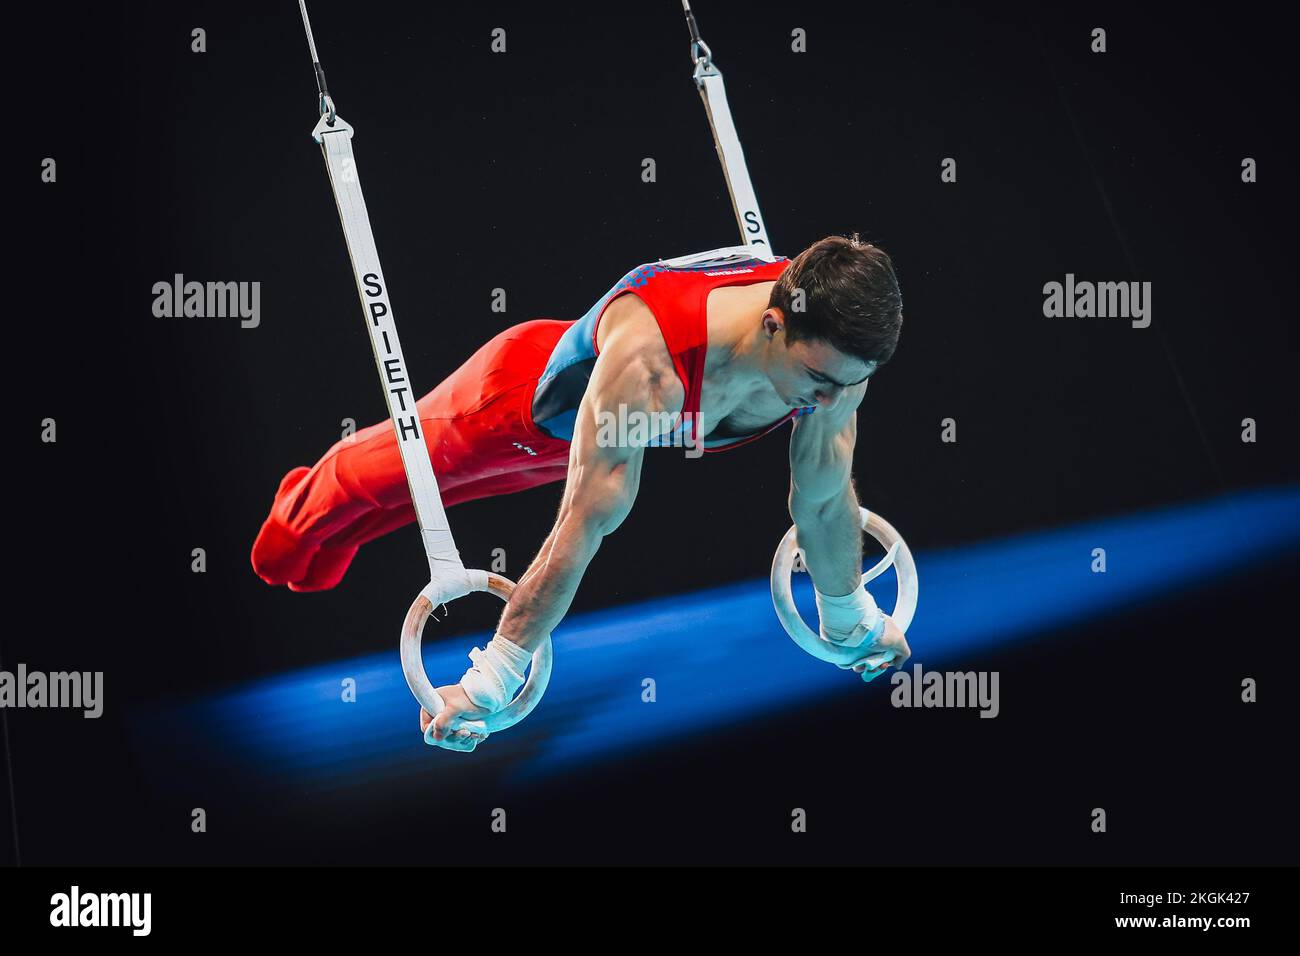 Szczecin, Pologne, 10 avril 2019: L'athlète masculin Tovmasyan Artur d'Arménie participe sur les anneaux lors des championnats européens de gymnastique artistique Banque D'Images